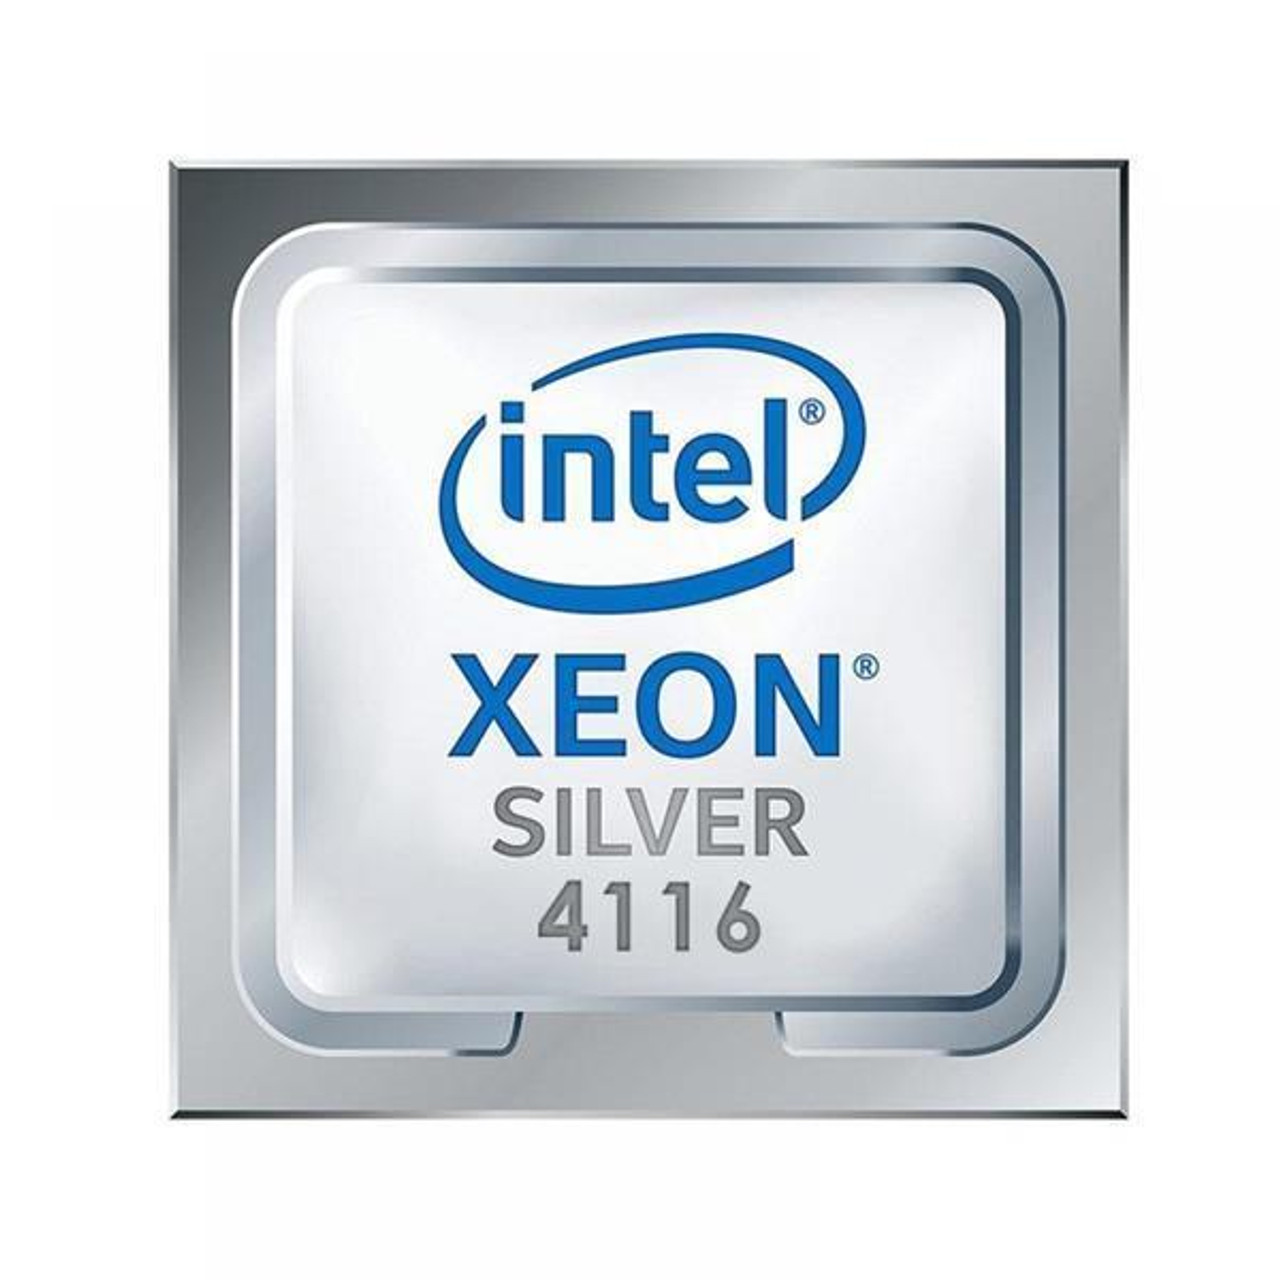 Dell CPU Kit Intel Xeon Silver 12 Core Processor 4116 2.10GHz 16.5mb L3 Cache Tdp 85w Fclga3647 For Dell Precision 7820 Tower Workstation ( T7820 )